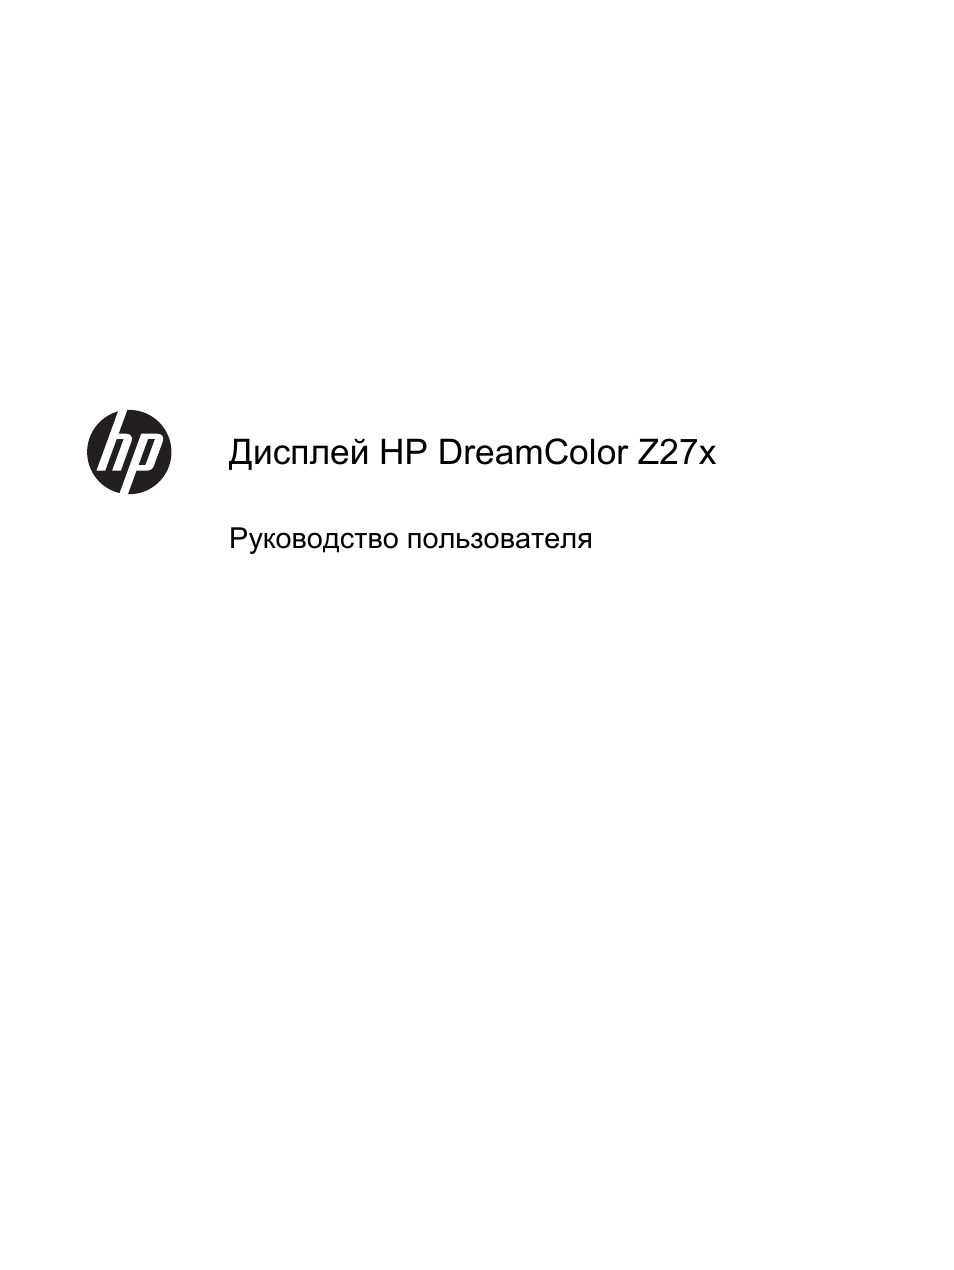 Инструкция по эксплуатации HP Профессиональный монитор HP DreamColor Z27x Professional Display | 86 страниц